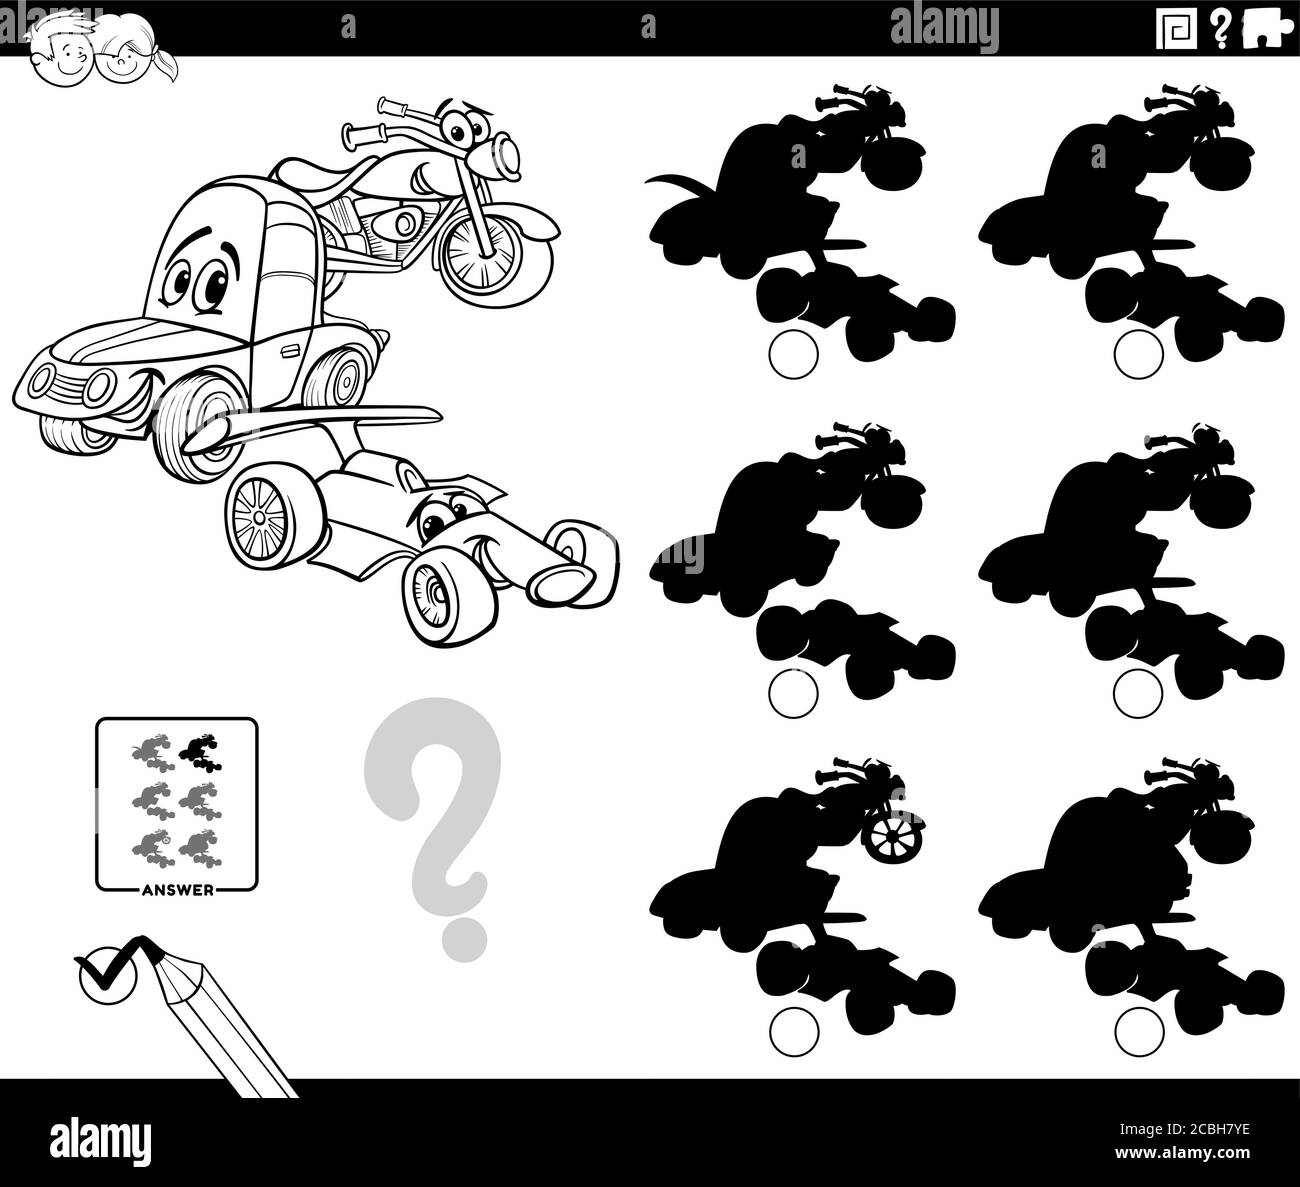 Schwarz-Weiß-Cartoon Illustration der Suche nach dem Schatten ohne Unterschiede Pädagogische Spiel für Kinder mit lustigen Fahrzeugen Zeichen Färbung B Stock Vektor